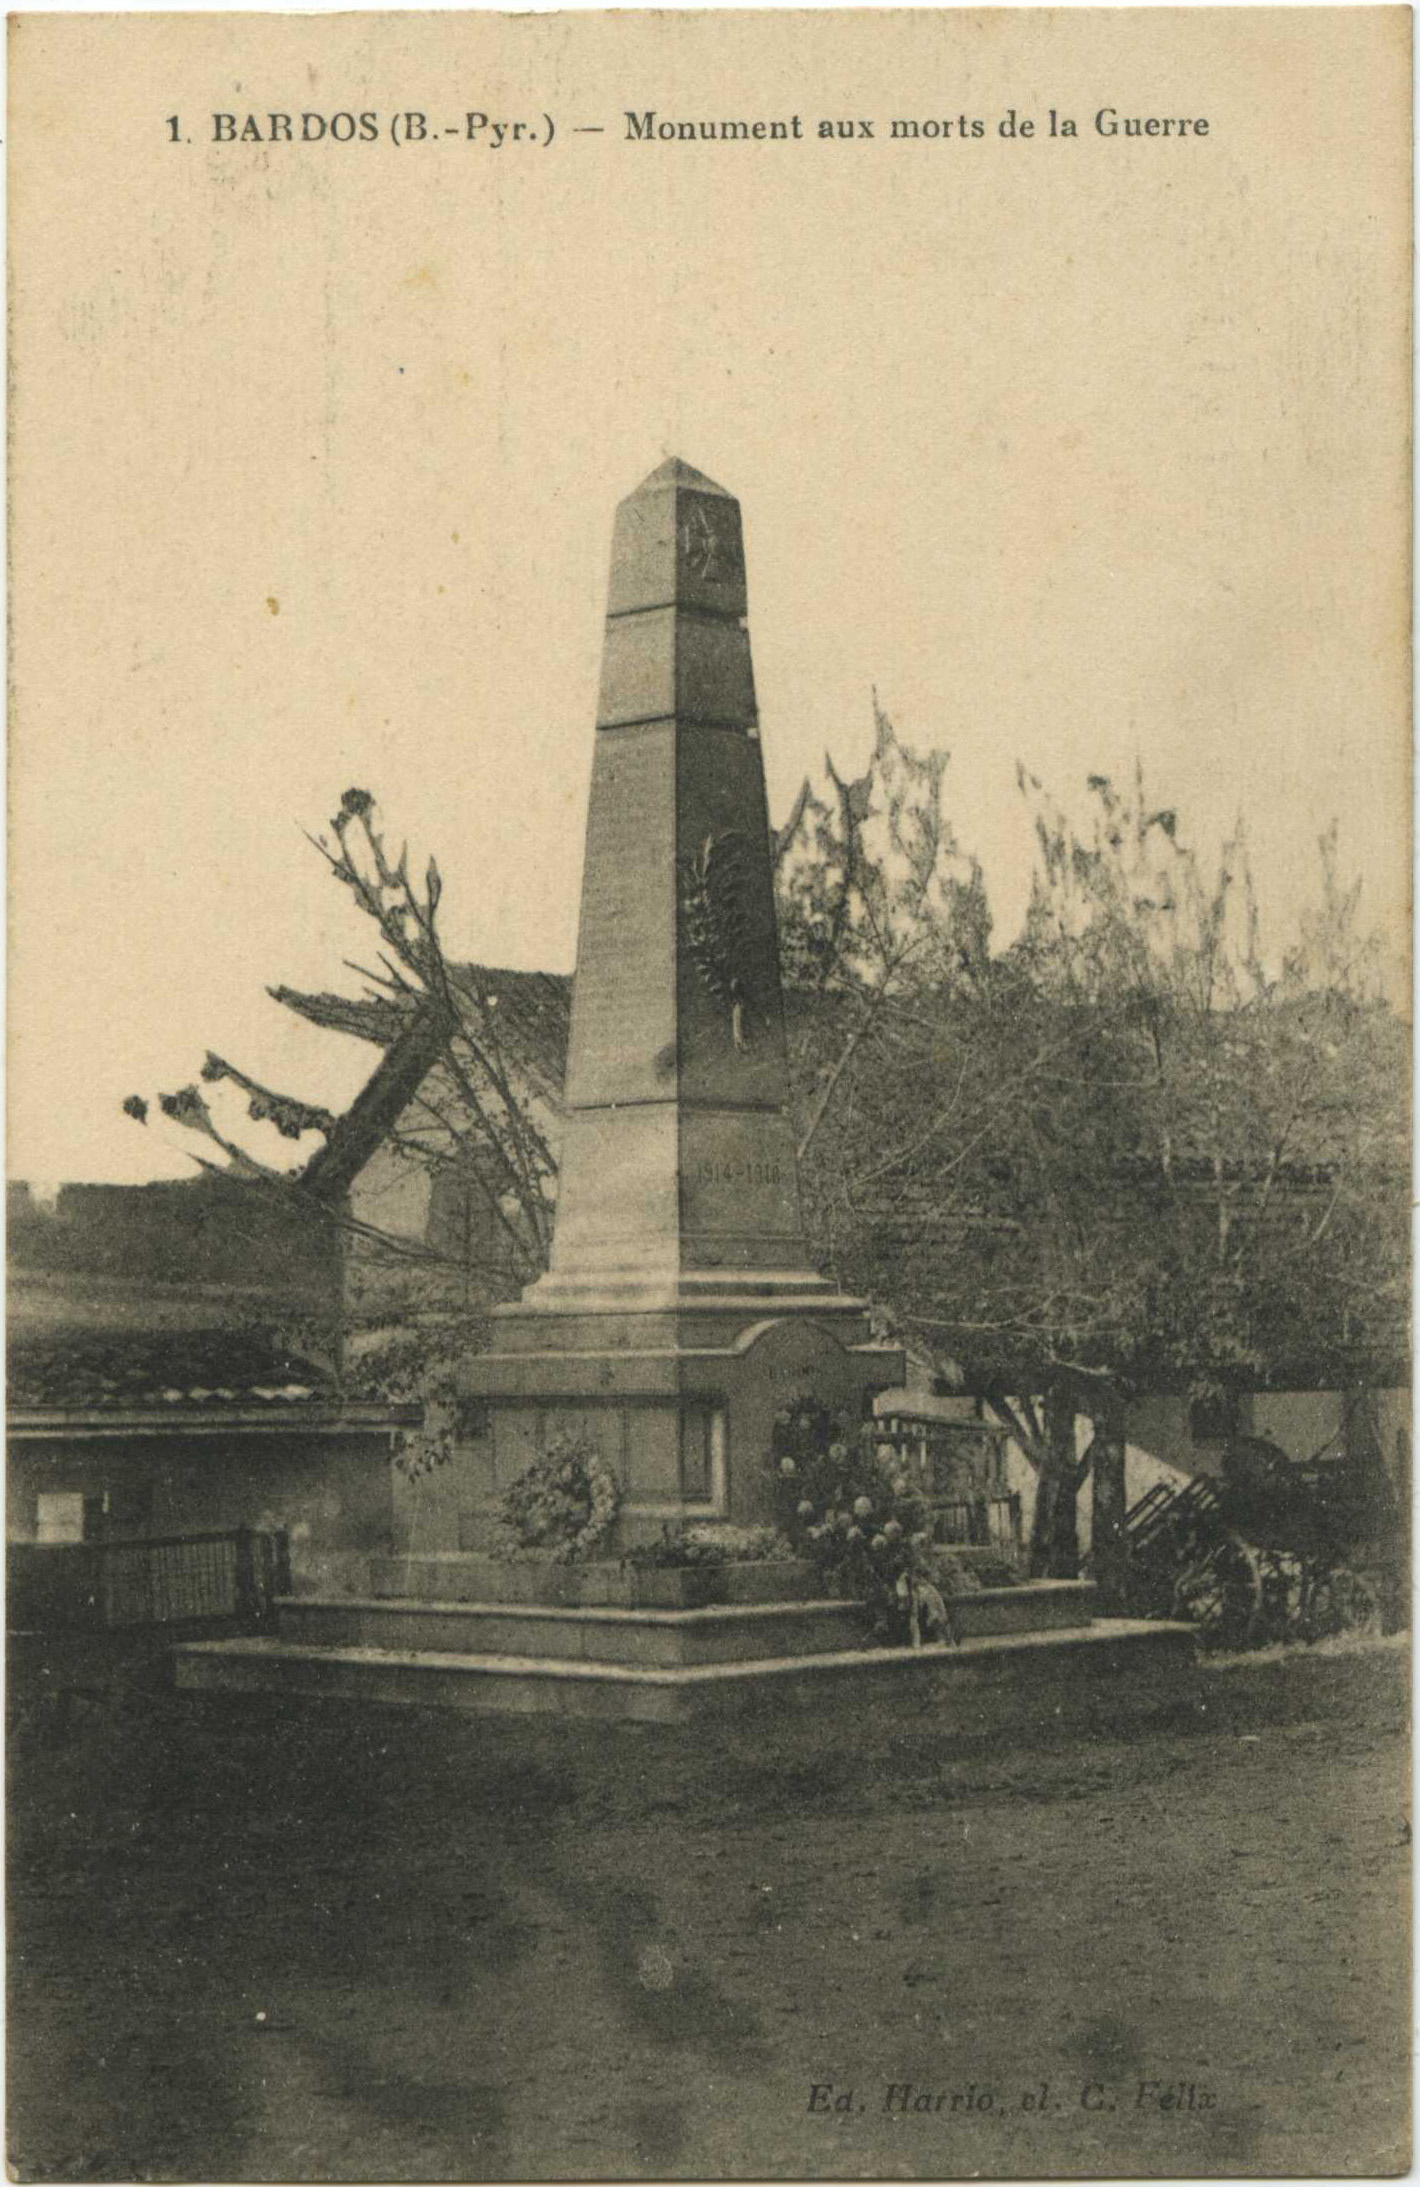 Bardos - Monument aux morts de la Guerre